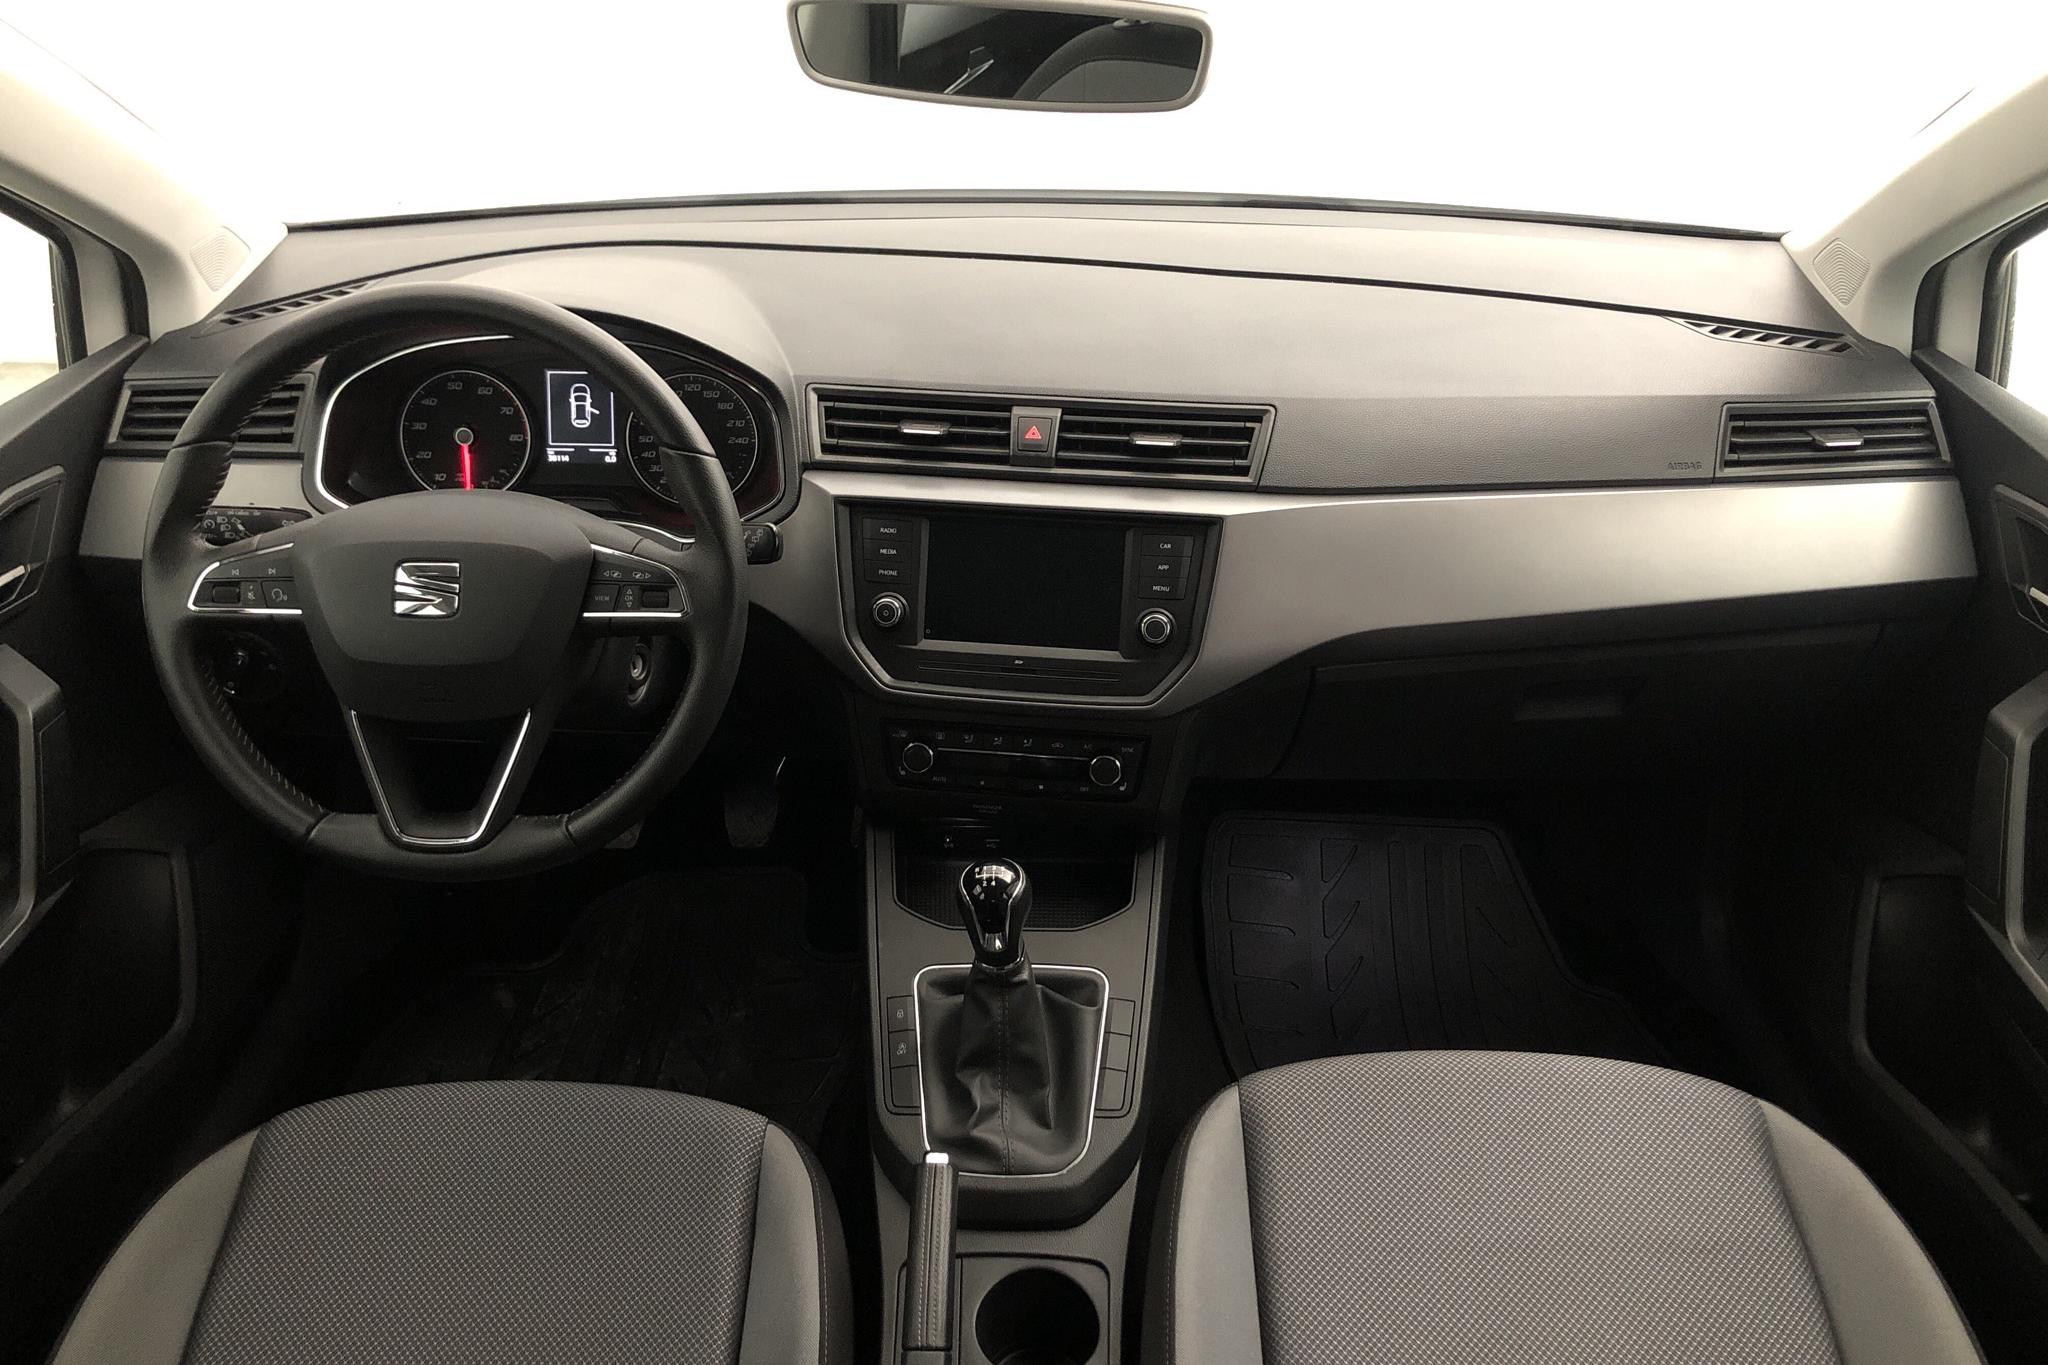 Seat Ibiza 1.0 MPI 5dr (80hk) - 3 812 mil - Manuell - vit - 2019